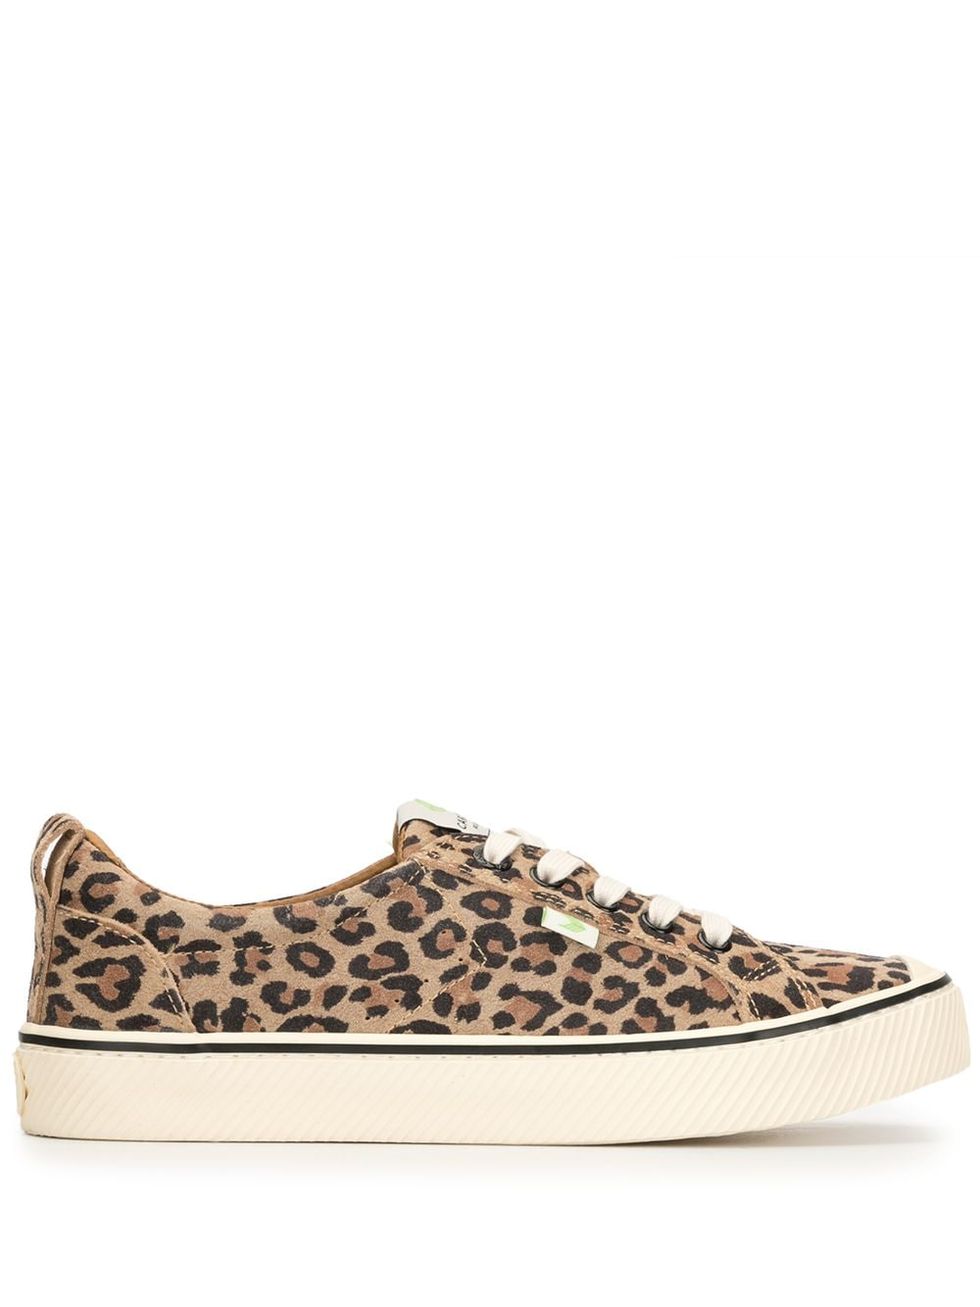 OCA Low Stripe Leopard Print Suede Sneaker